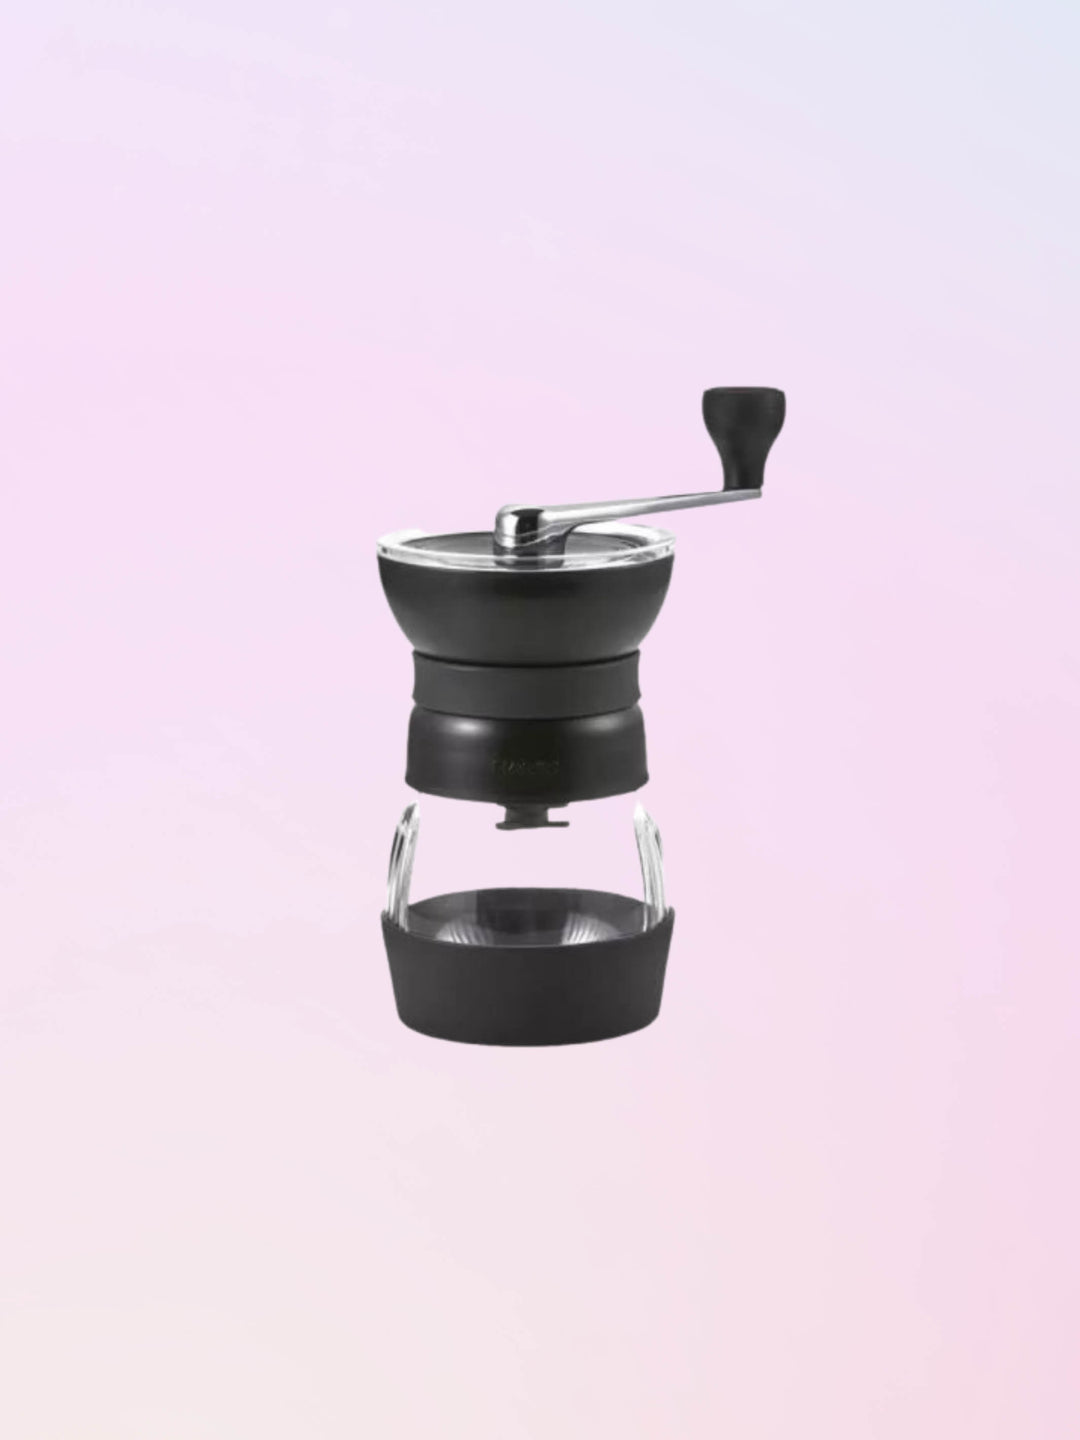 Hario skerton pro hand-crank coffee grinder.